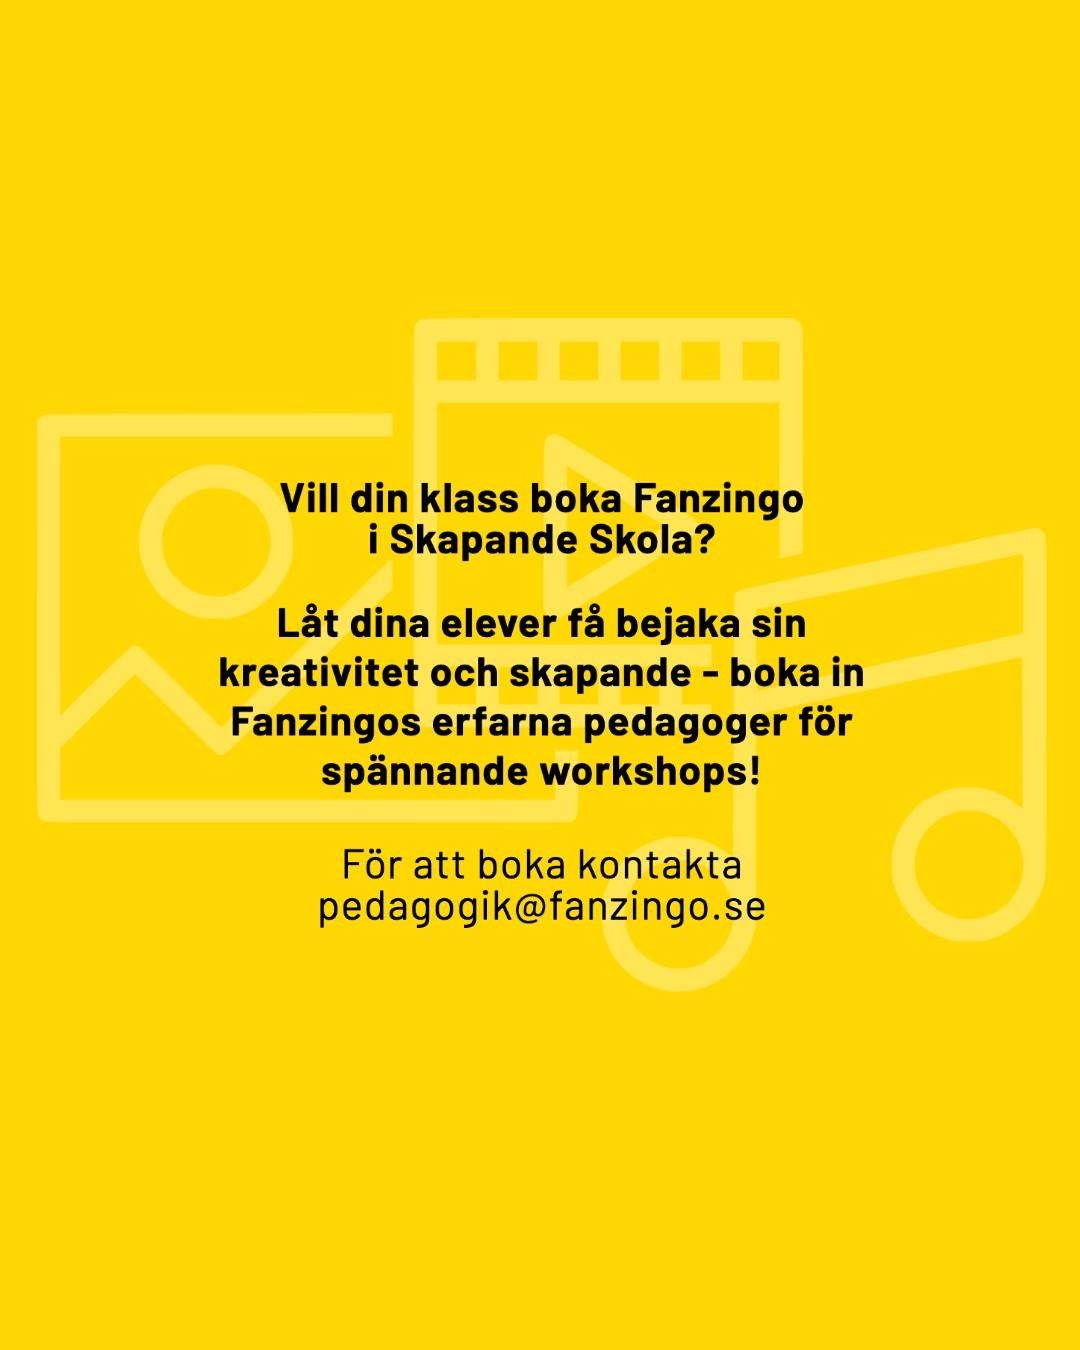 Skapande skola! Fanzingo erbjuder flera spännande och kreativa workshops inom ramen för Skapande Skola. Det handlar om film- och radio koncept i olika längd som riktar sig till alla åldrar i årskurserna f-9. ⁠

Går även att boka digitalt!⁠

Läs mer om våra olika koncept via länken i vår profil eller kontakta oss så berättar vi mer pedagogik@fanzingo.se

#redigering⠀